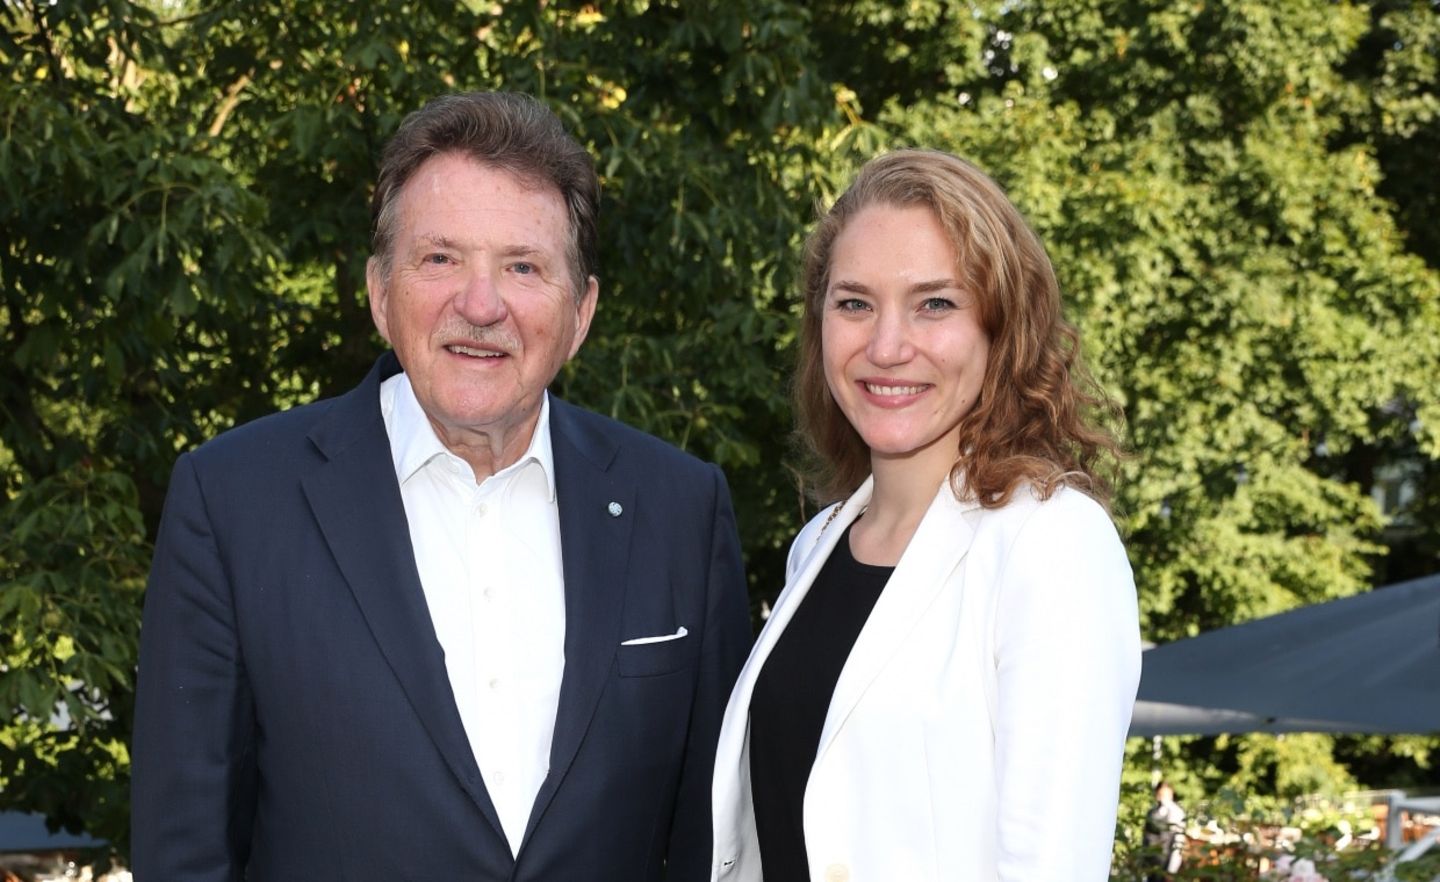 Eberhard Sasse und Clara Sasse bei einem Charity-Event im August 2021